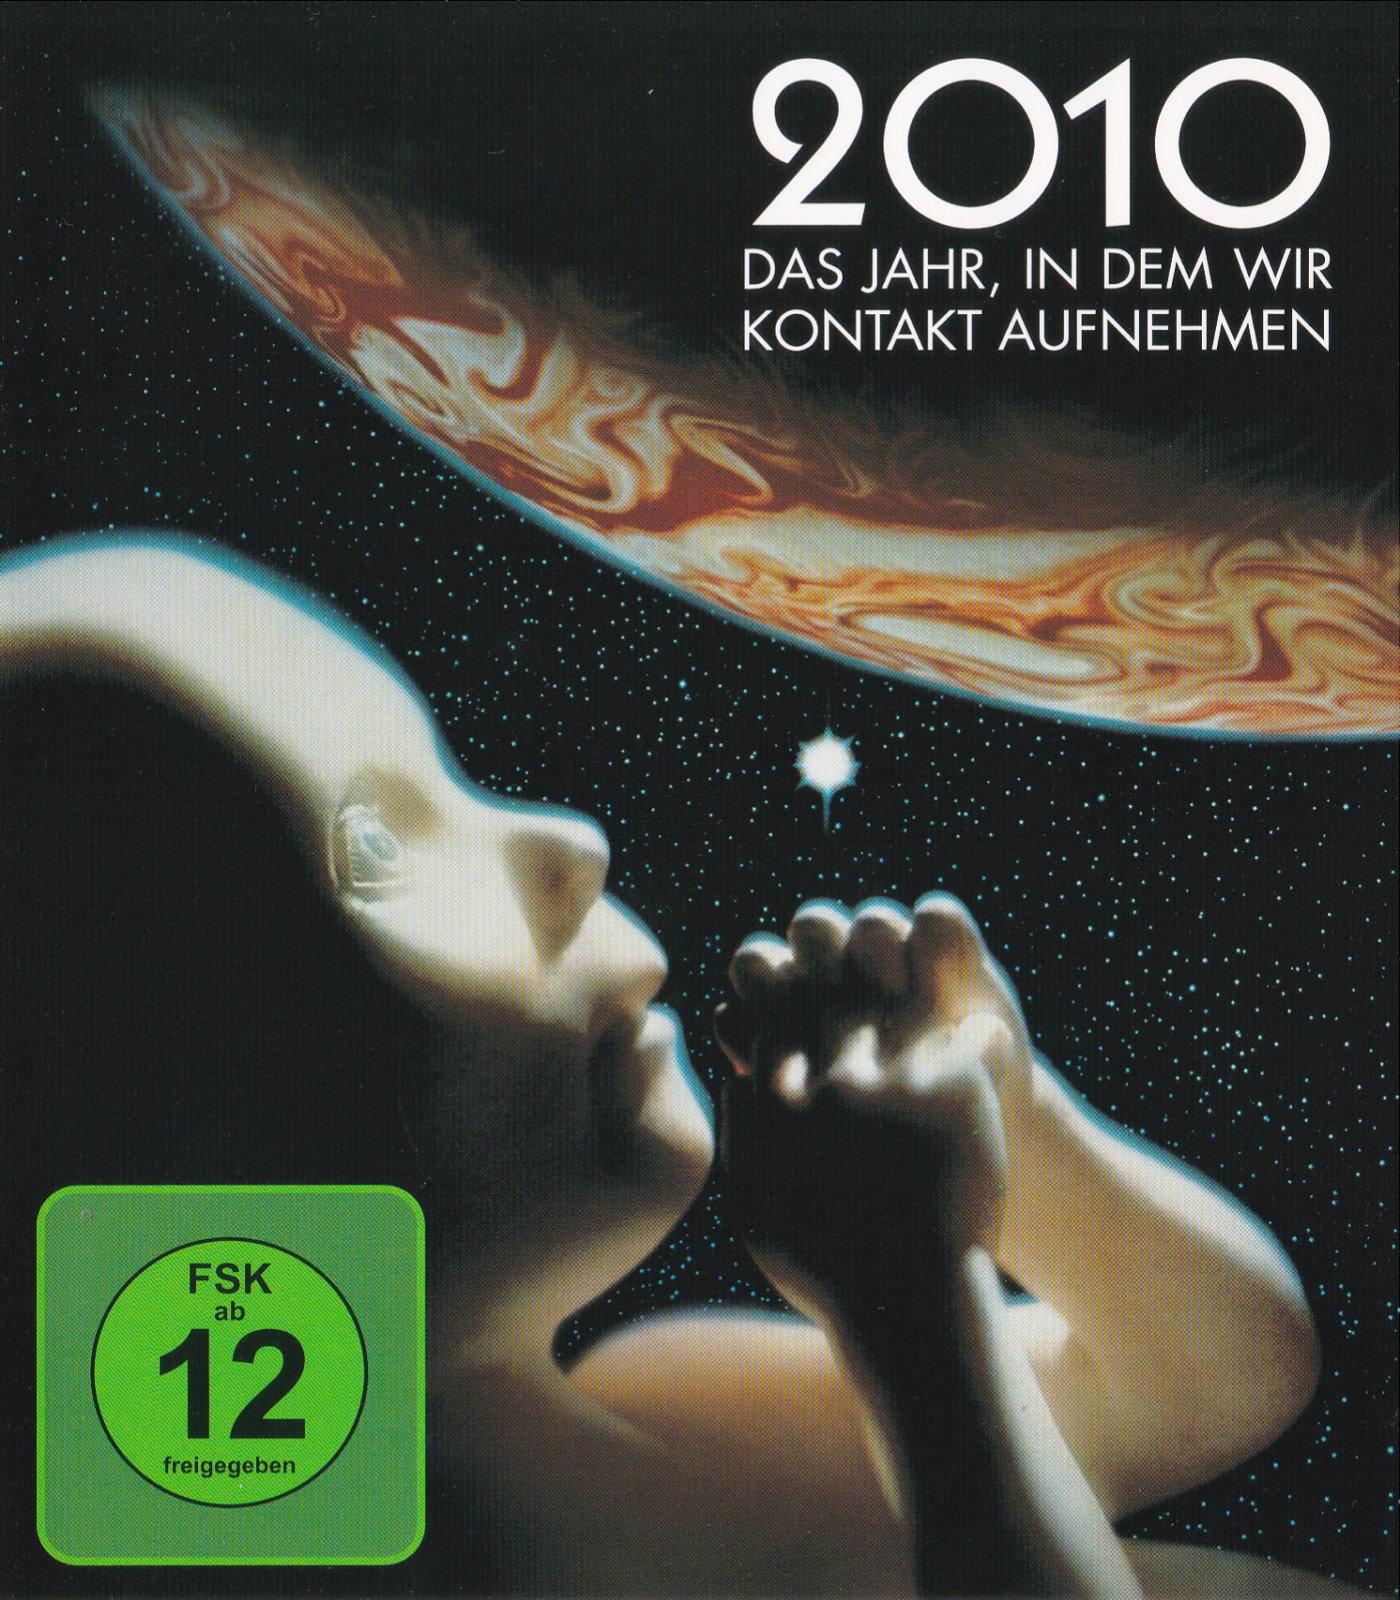 Cover - 2010 - Das Jahr, in dem wir Kontakt aufnahmen.jpg